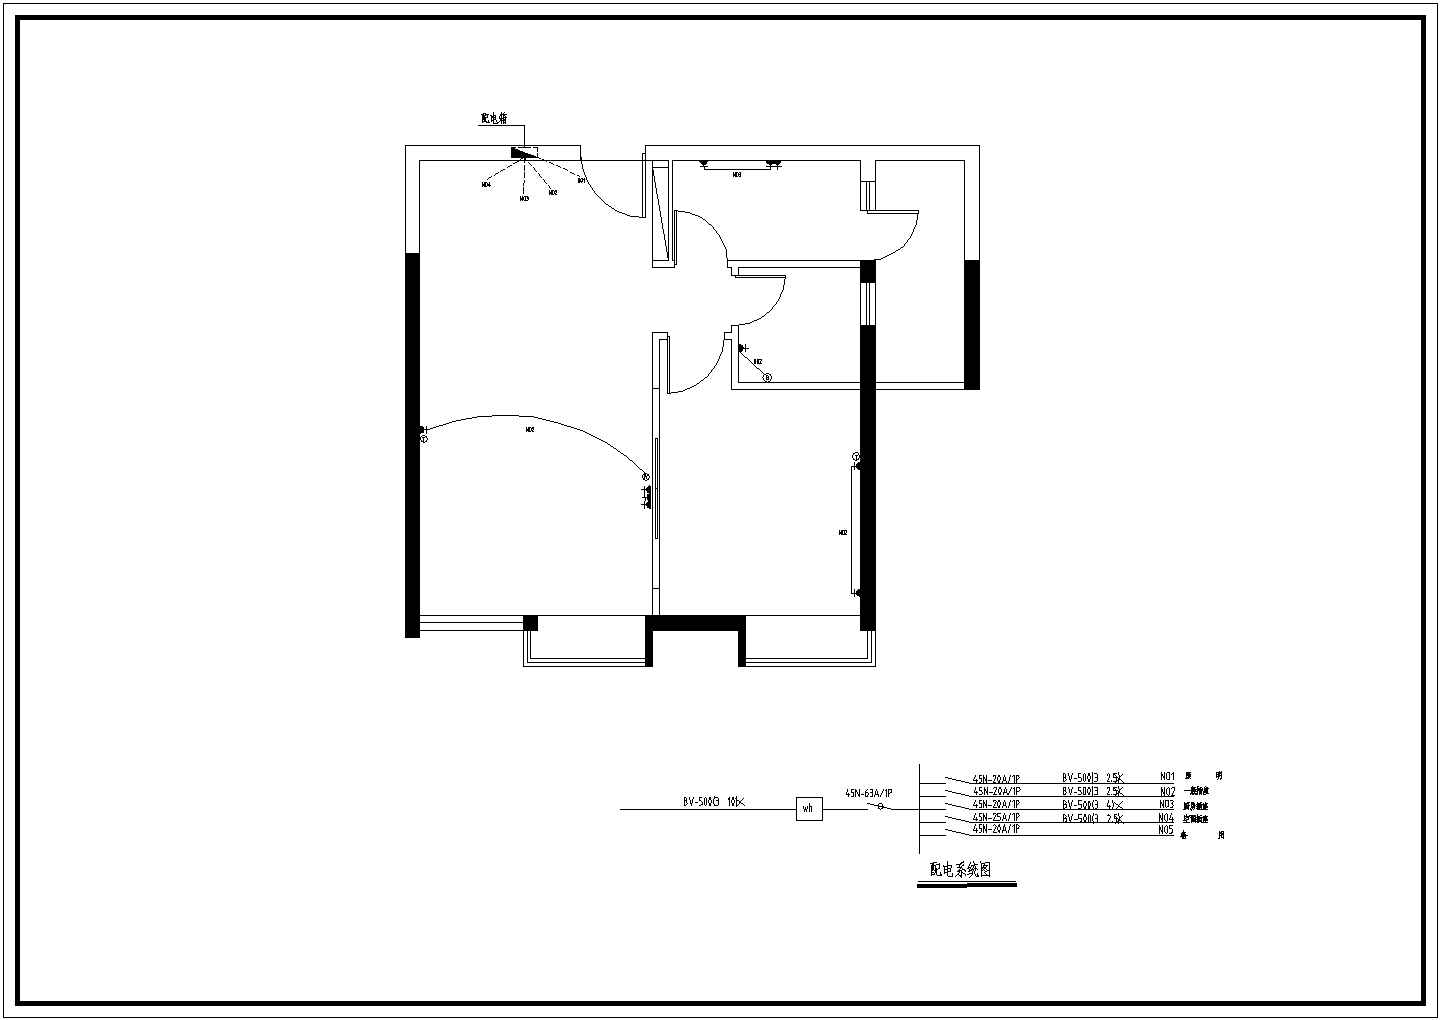 欧式风格小洋房全套中心施工设计cad图纸(含主人房立面图，厨房立面图)